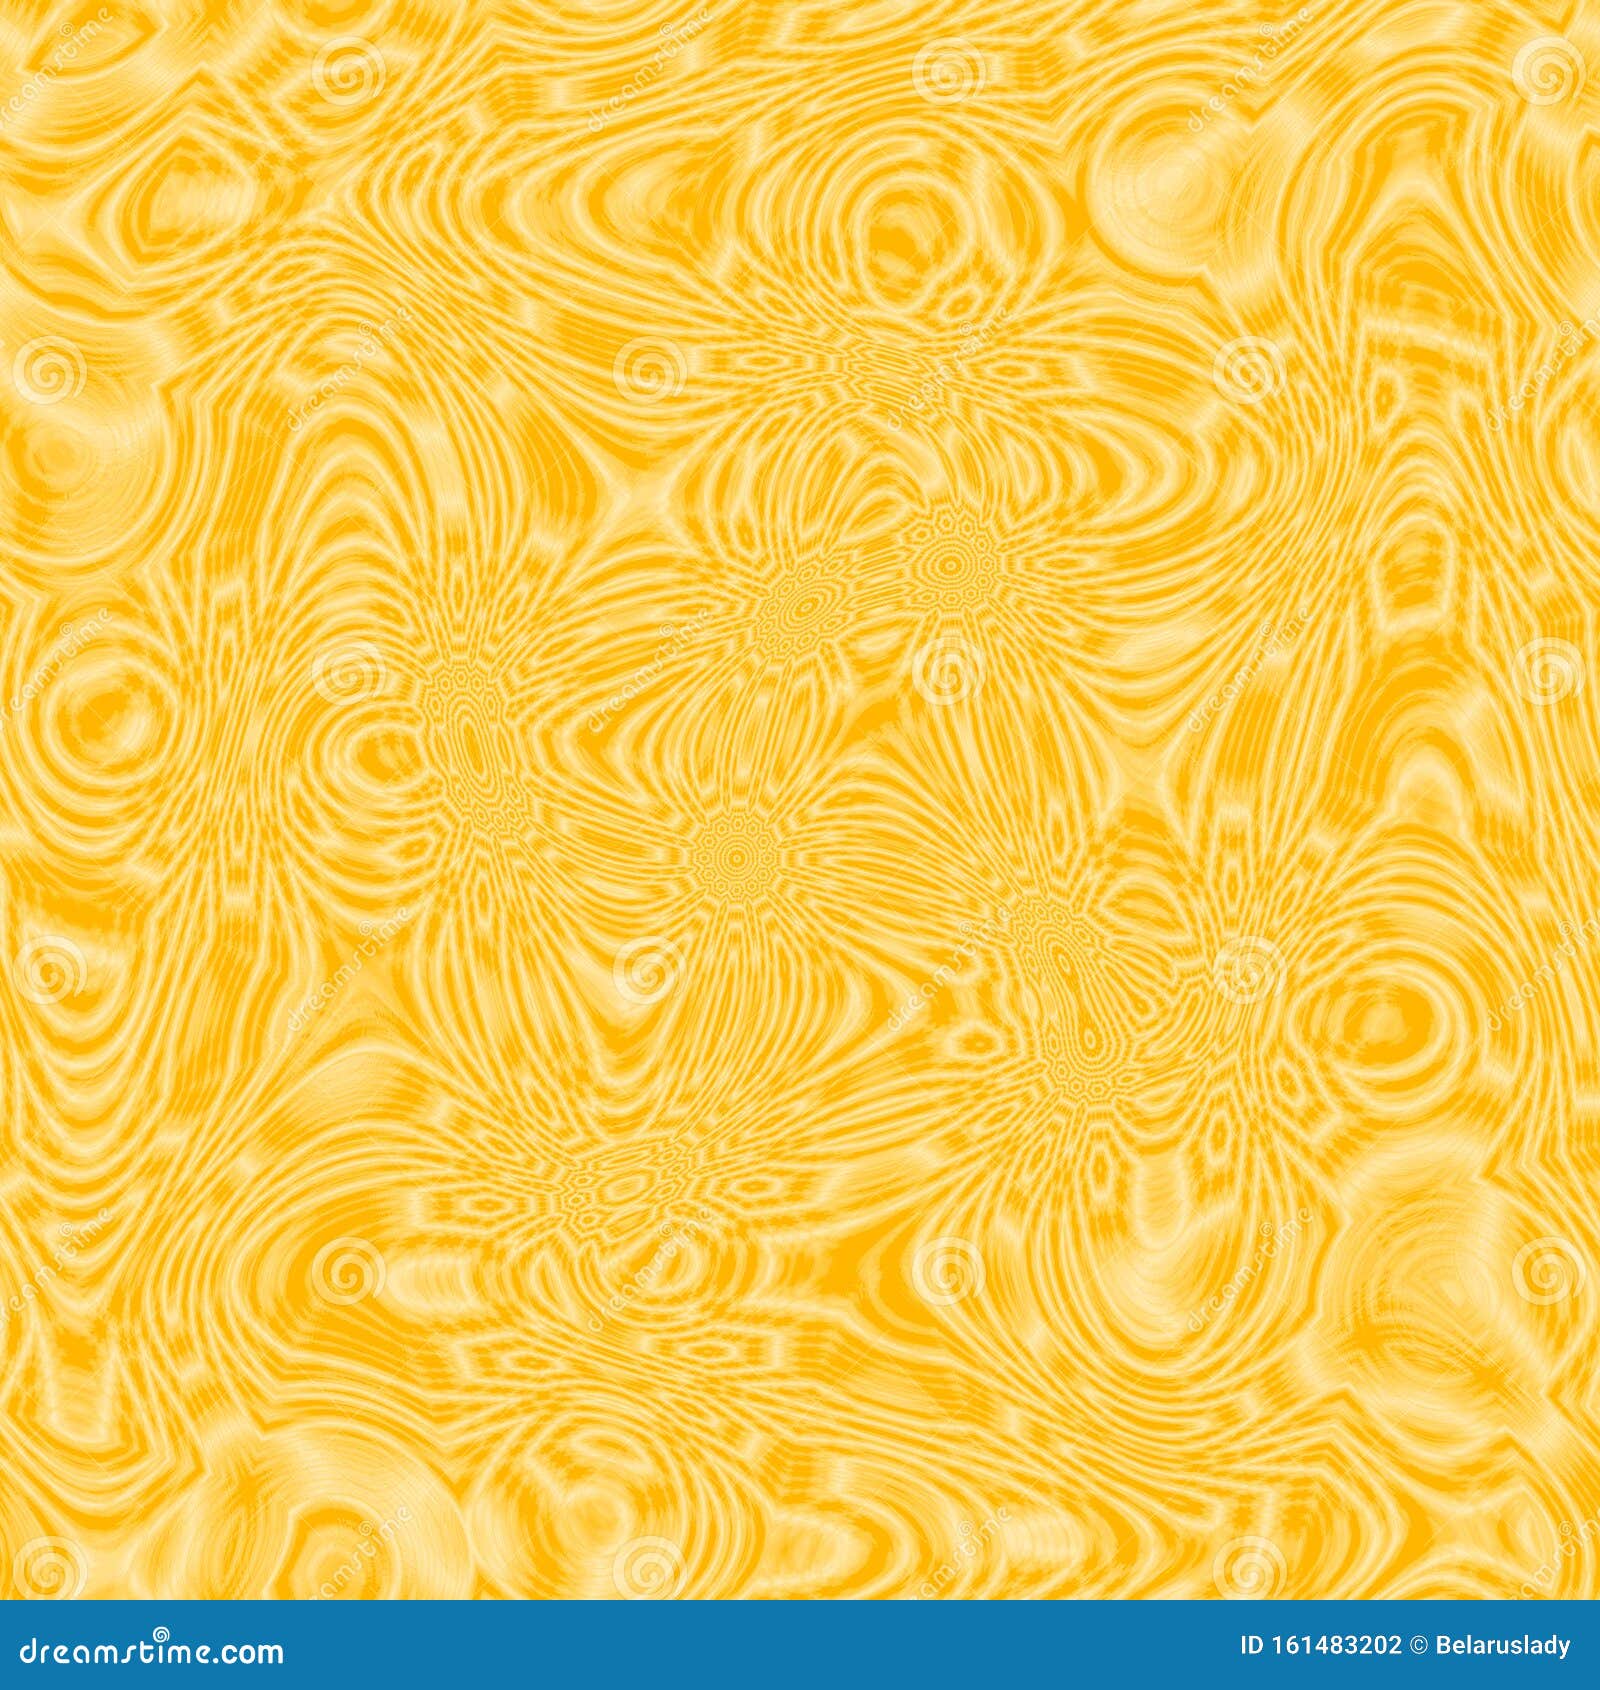 Elementos De Diseño Amarillo Brillante Para La Presentación De Folletos,  Tarjetas De Visita Y Fondos De Pantalla Patrón Abstracto Stock de  ilustración - Ilustración de marco, fondo: 161483202